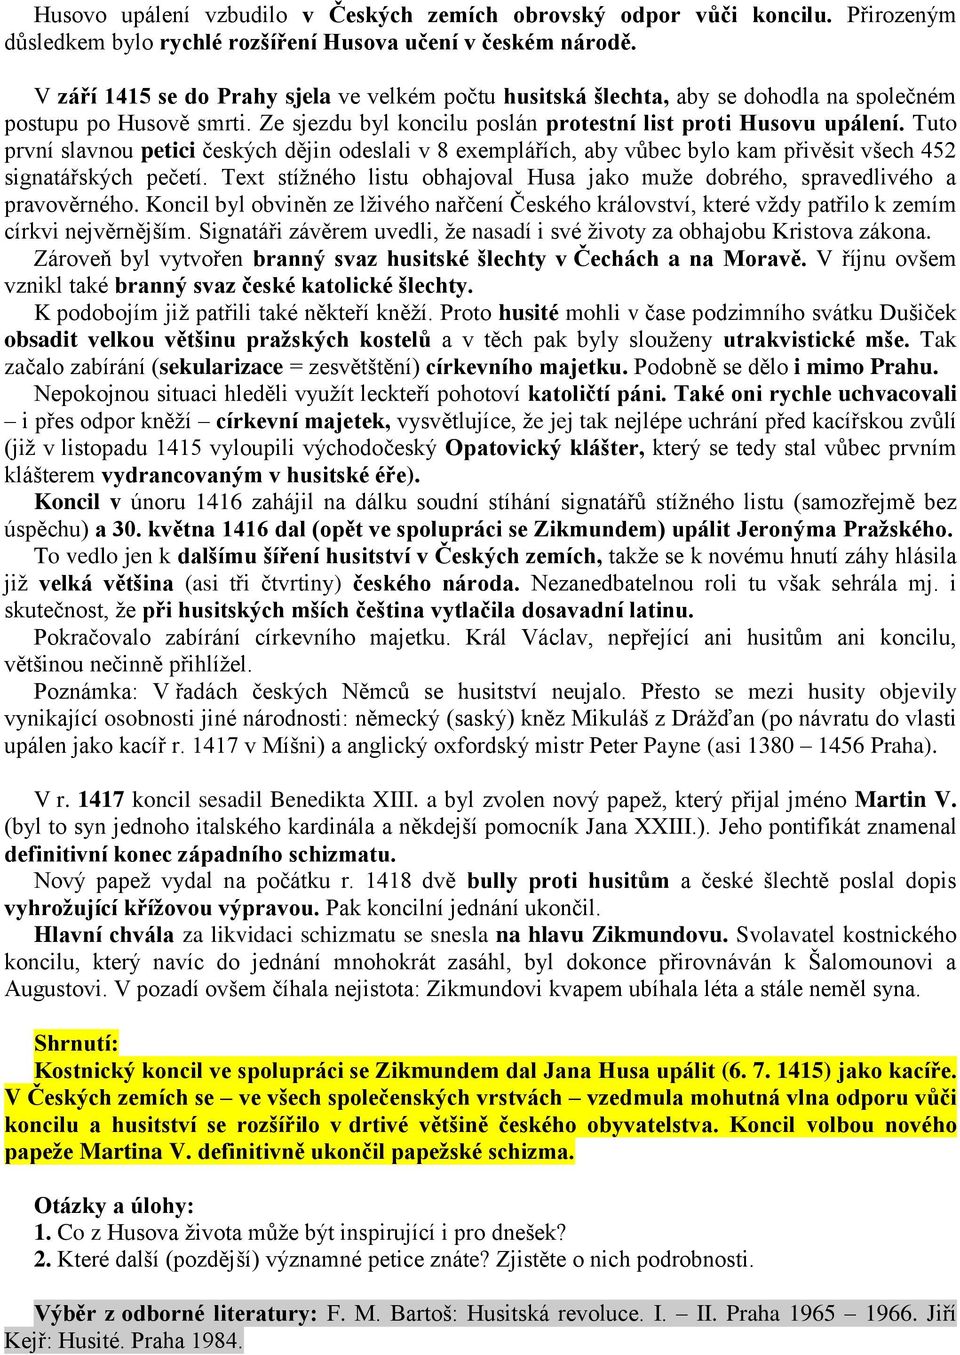 Tuto první slavnou petici českých dějin odeslali v 8 exemplářích, aby vůbec bylo kam přivěsit všech 452 signatářských pečetí.